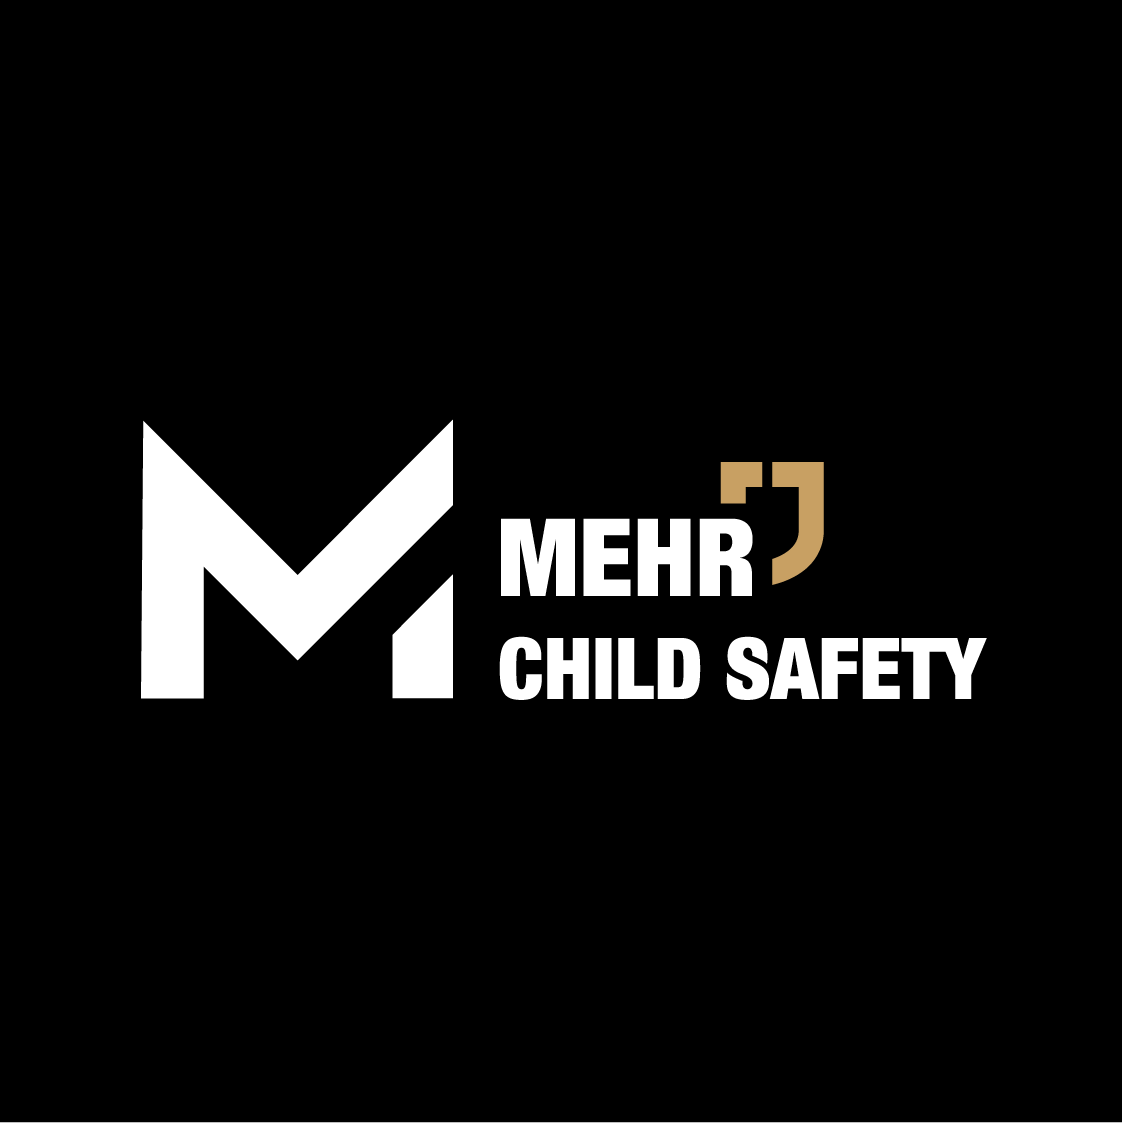 MEHR CHILD SAFETY